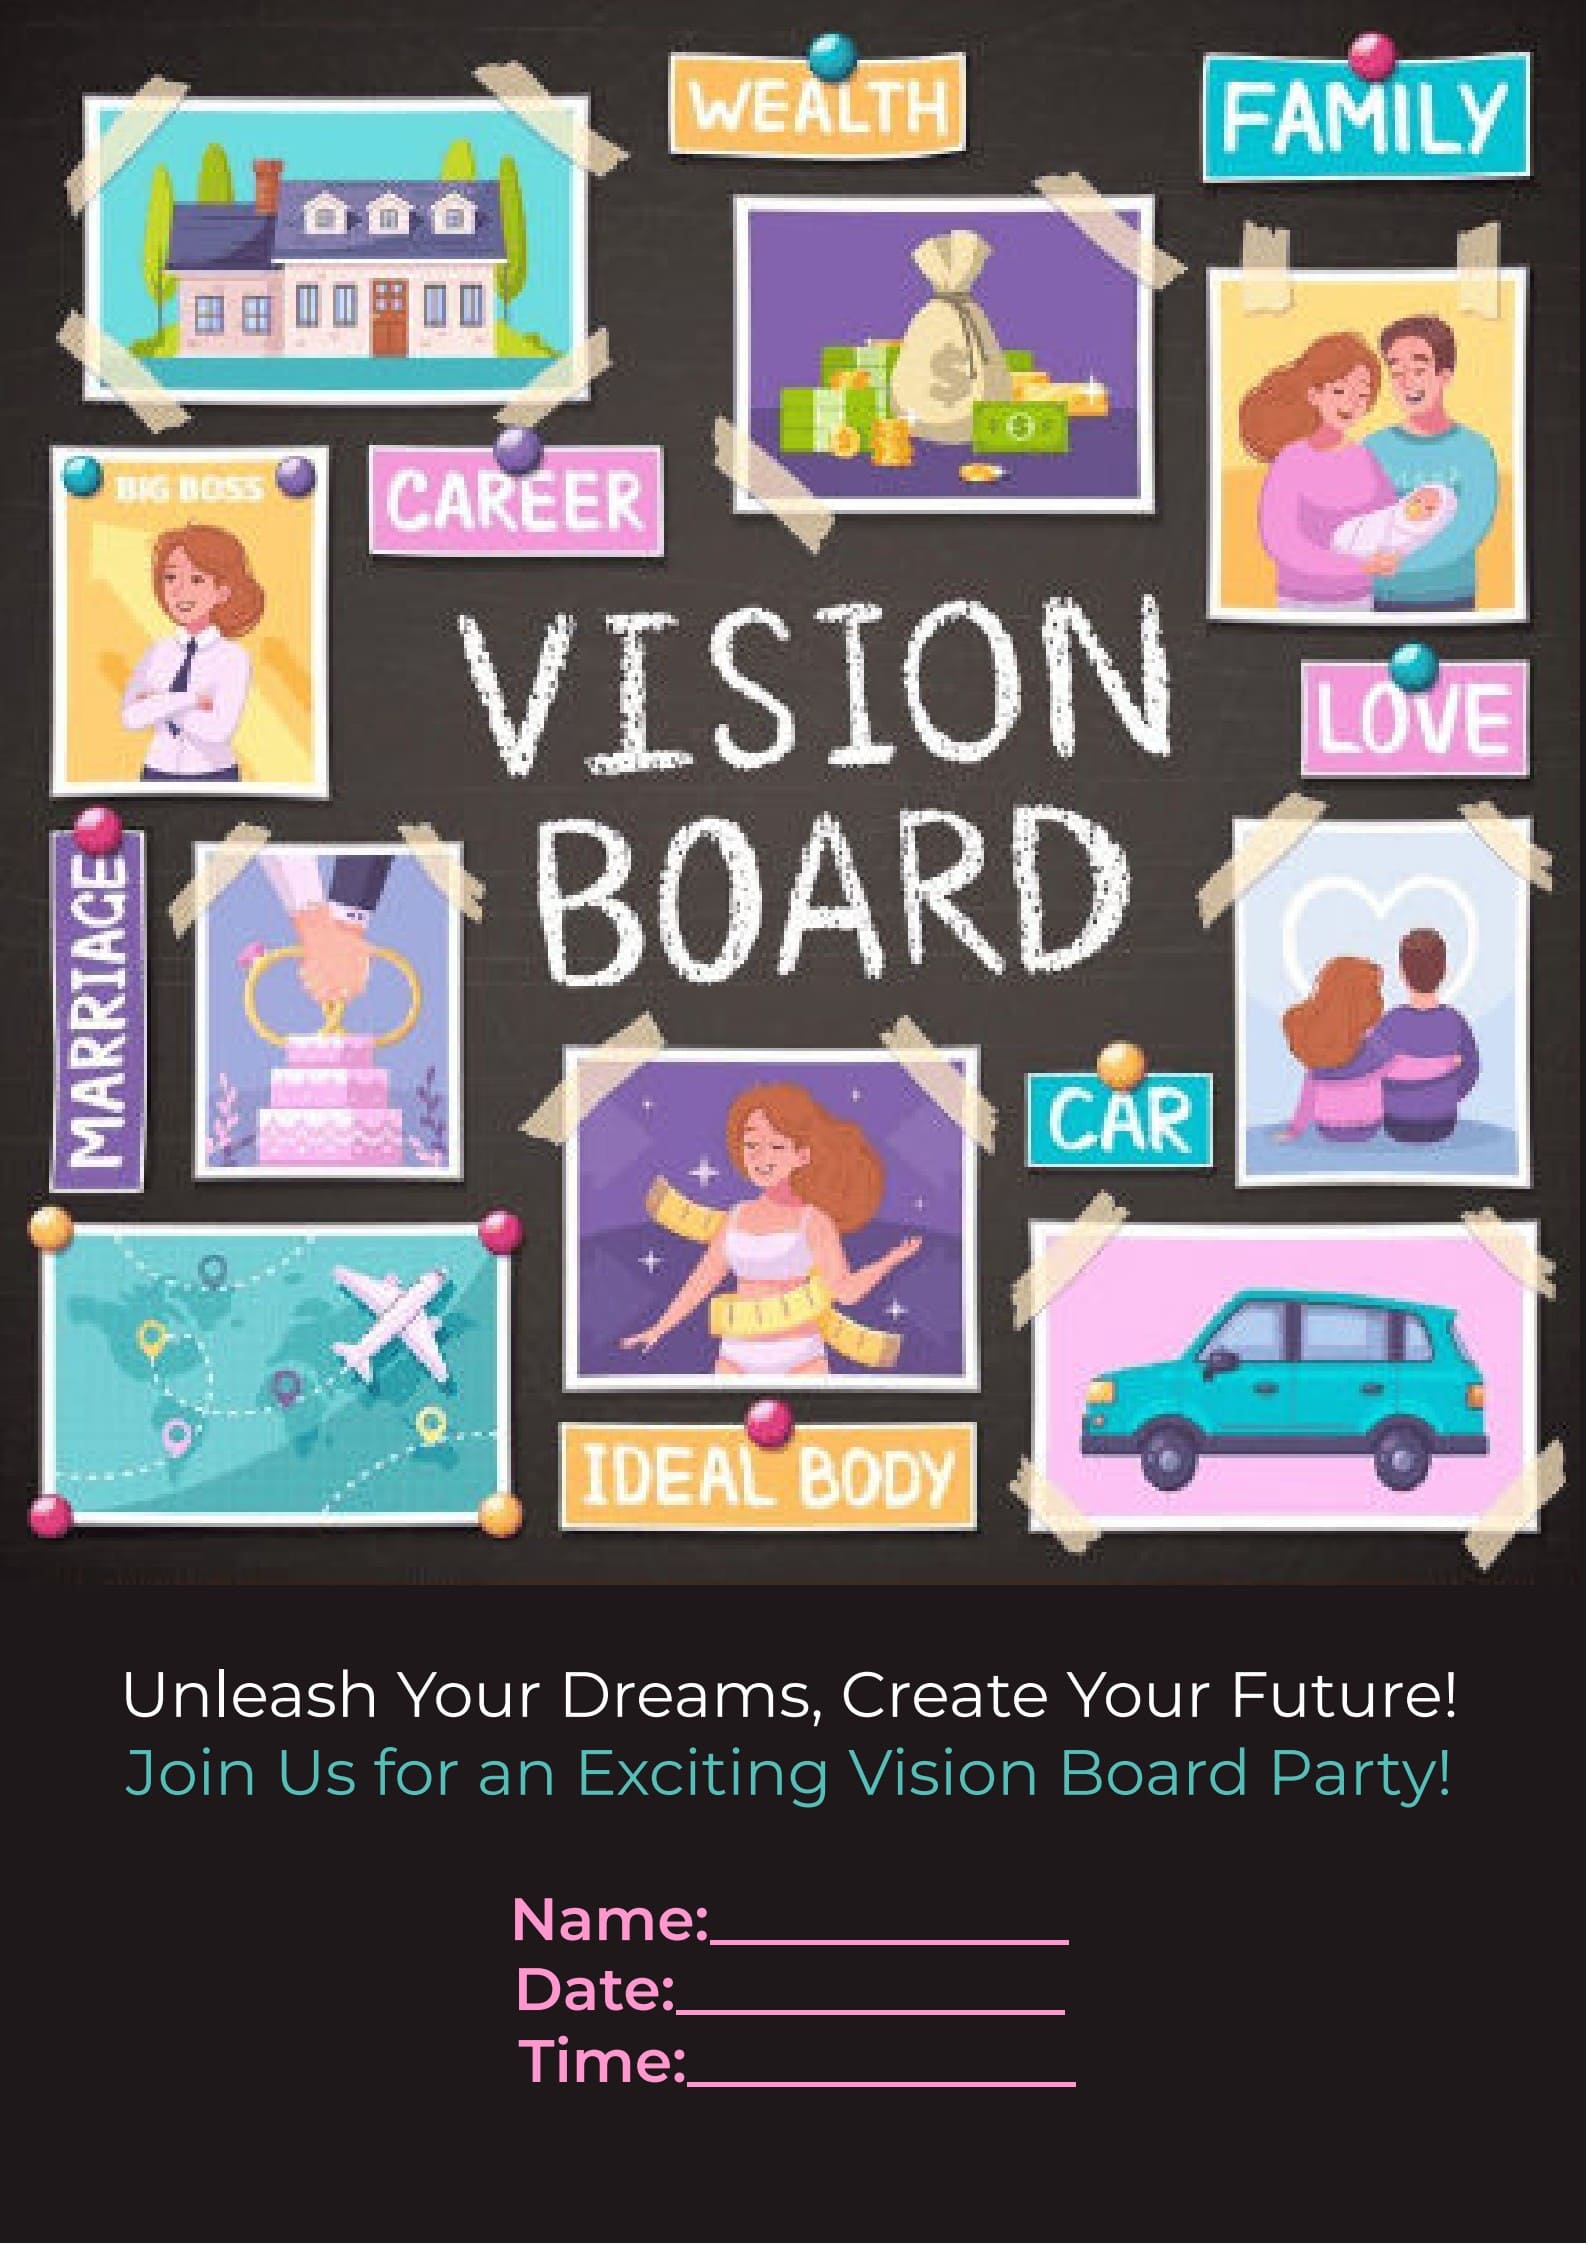 vision board party invitation template